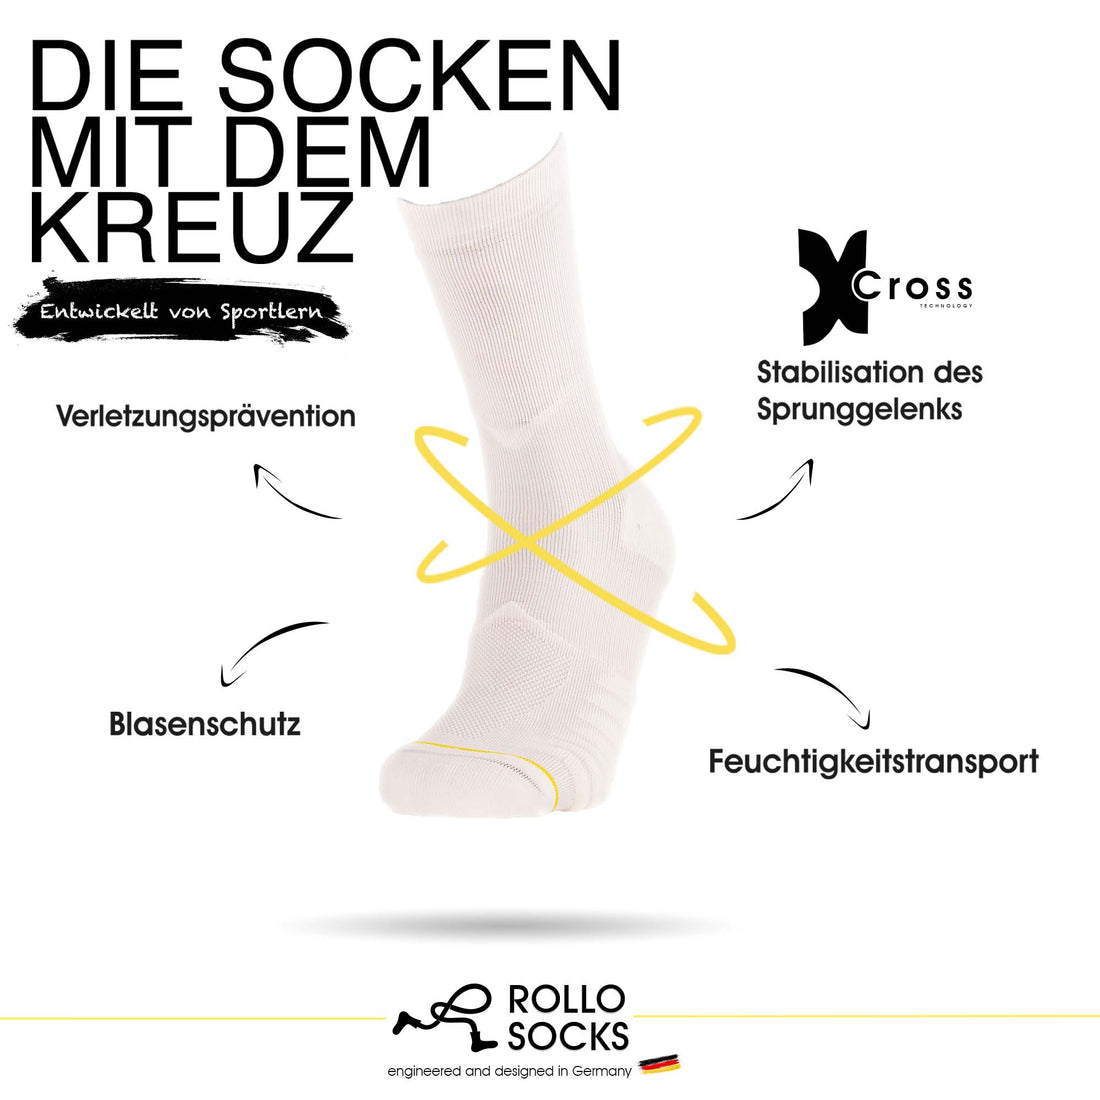 Erklärung der Kreuztechnologie anhand eines All White Sockens